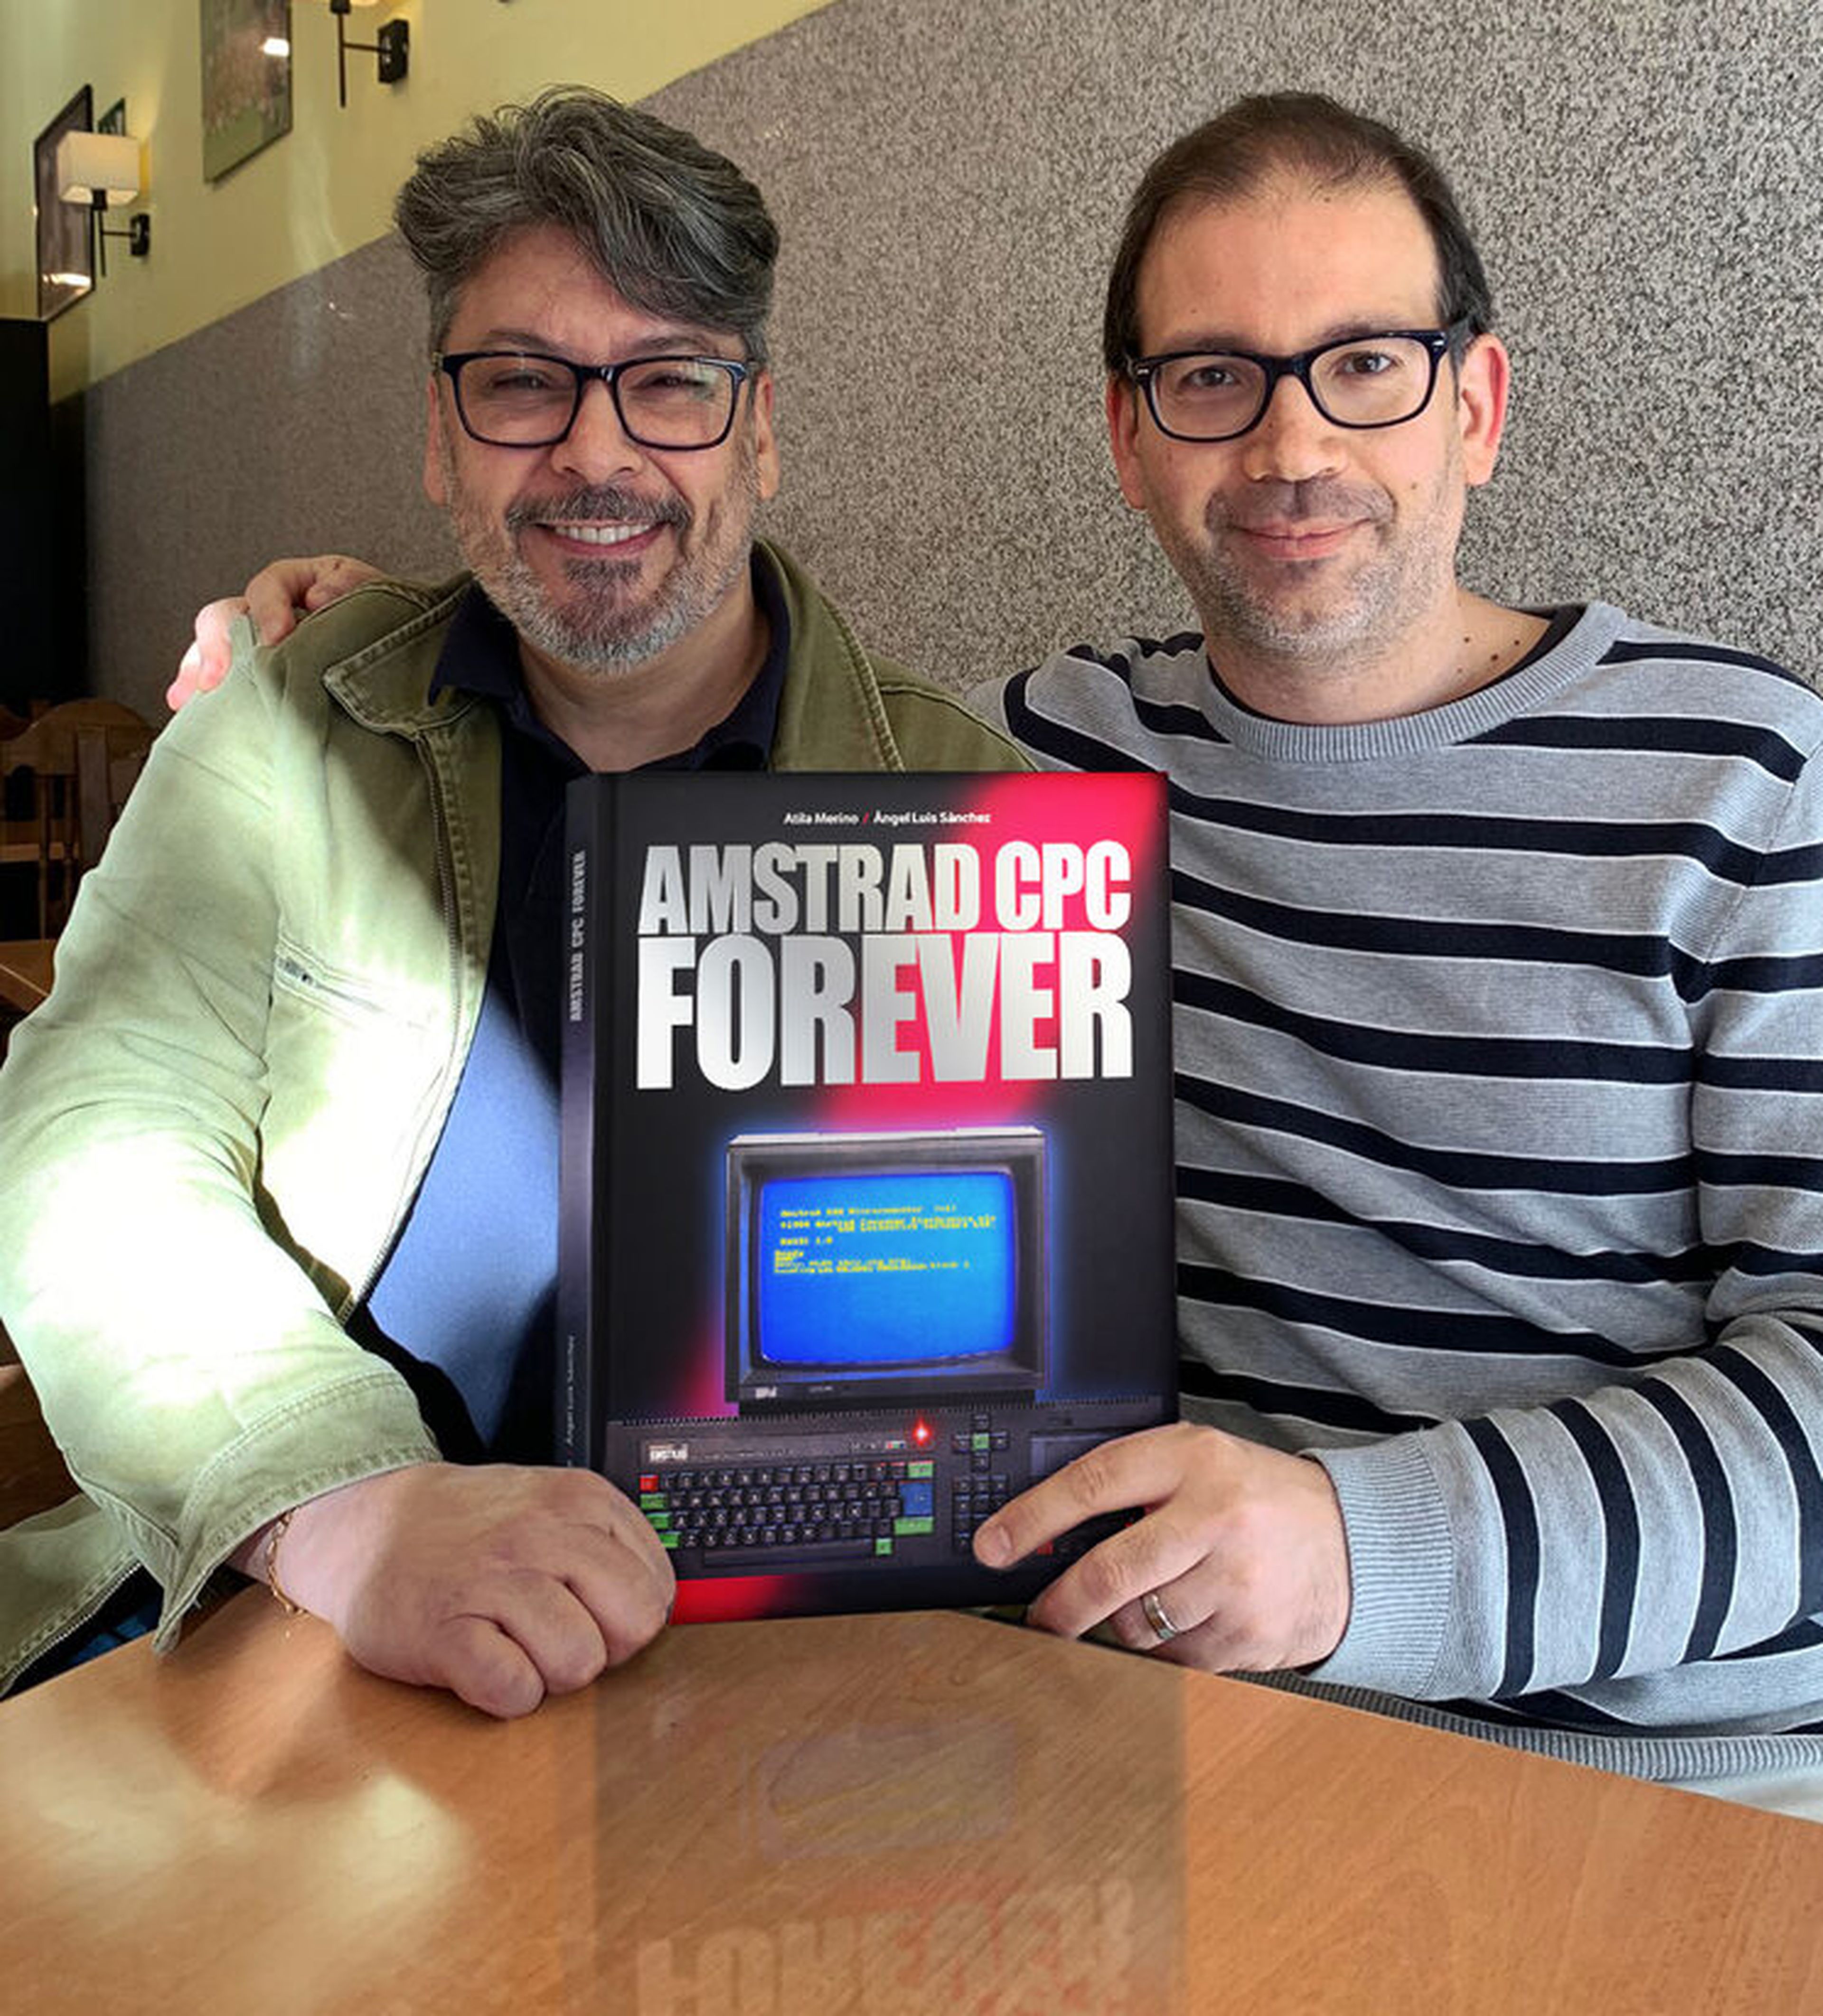 Ángel Luis Sánchez y Atila Merino con el libro Amstrad CPC Forever